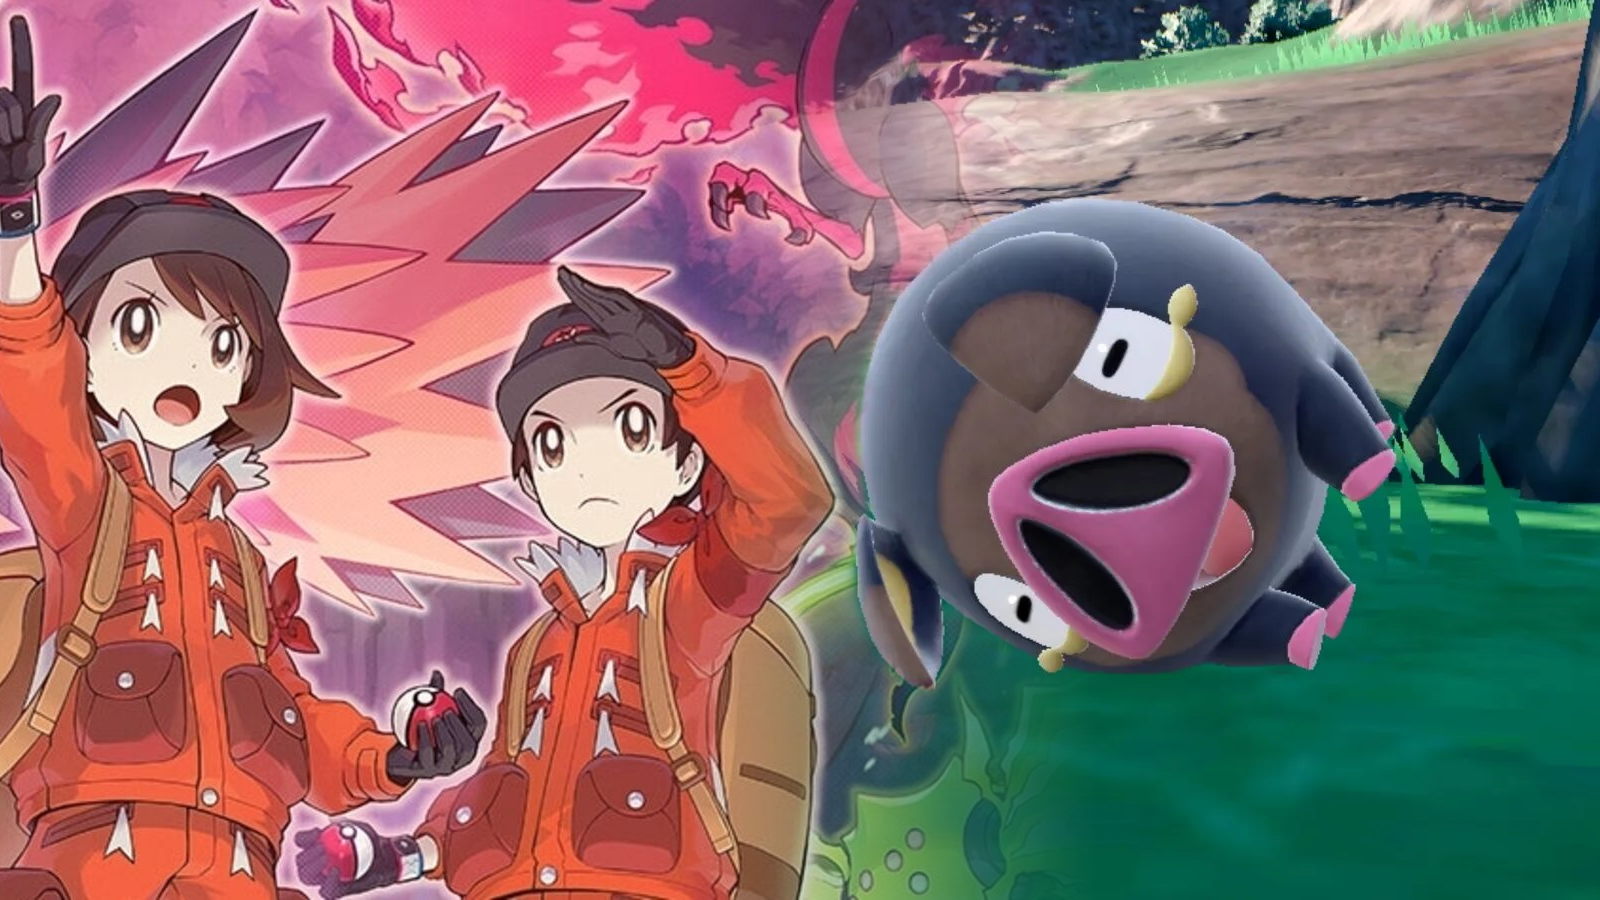 Pokemon Scarlet and Violet DLC Gets New Trailer - Insider Gaming